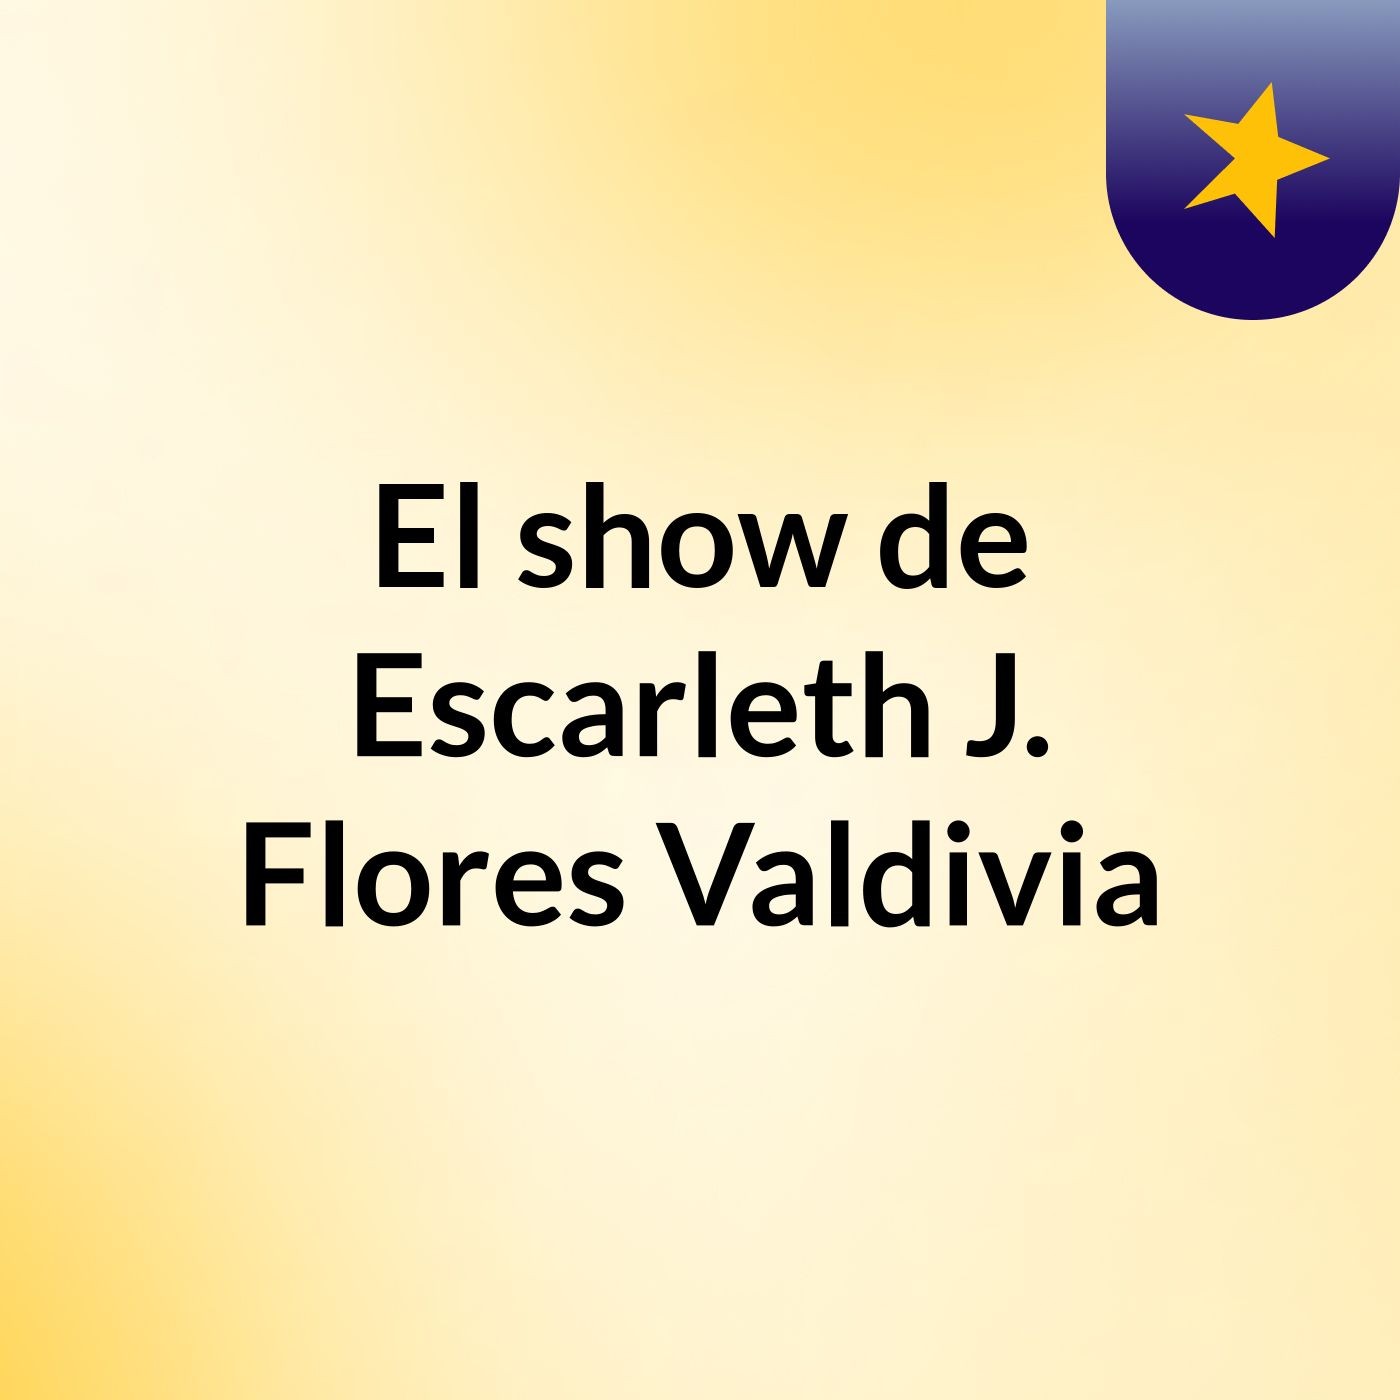 El show de Escarleth J. Flores Valdivia